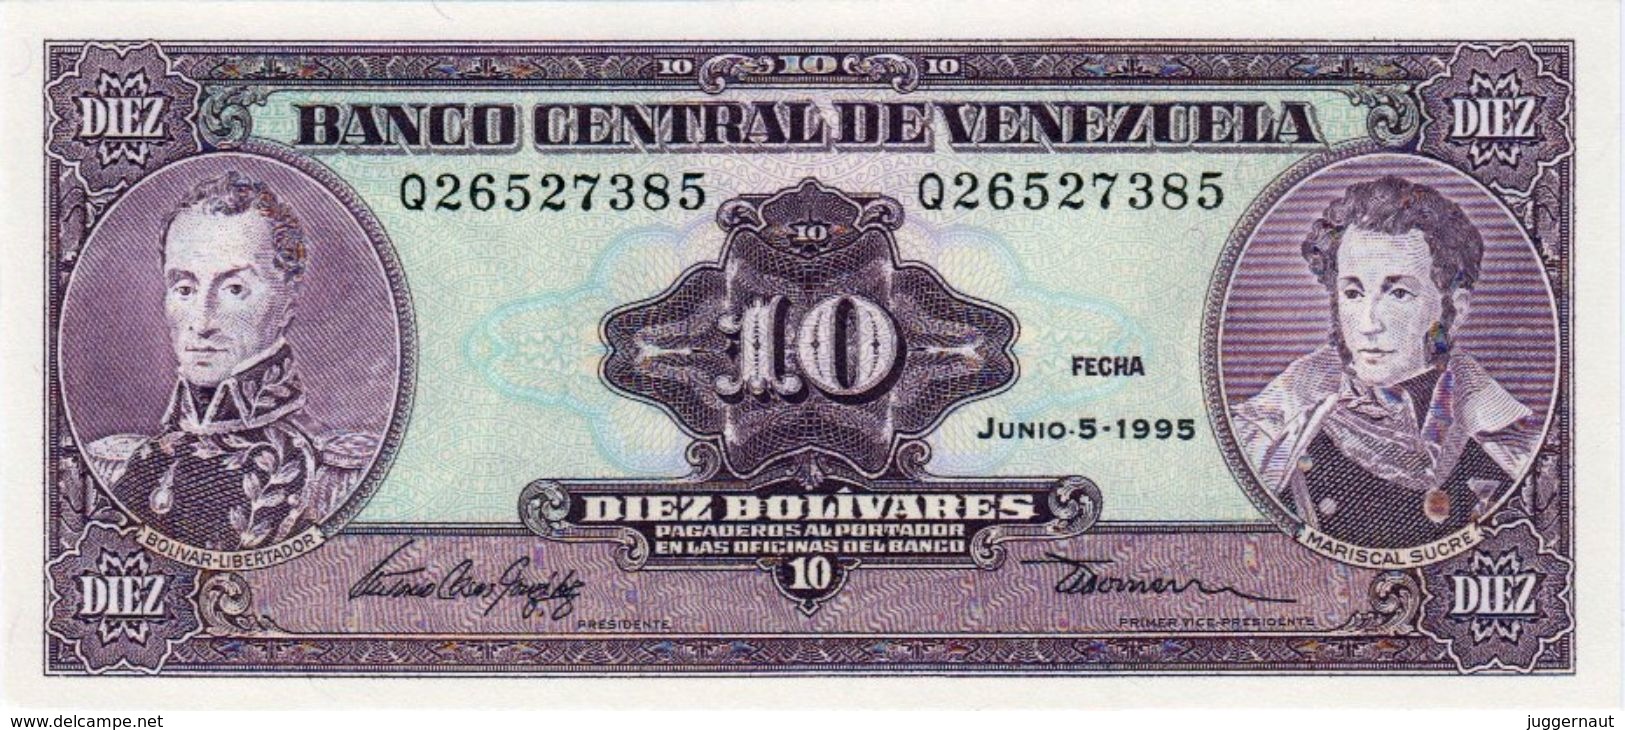 VENEZUELA 10 BOLIVIARES BANKNOTE 1995 PICK NO.61 UNCIRCULATED UNC - Venezuela